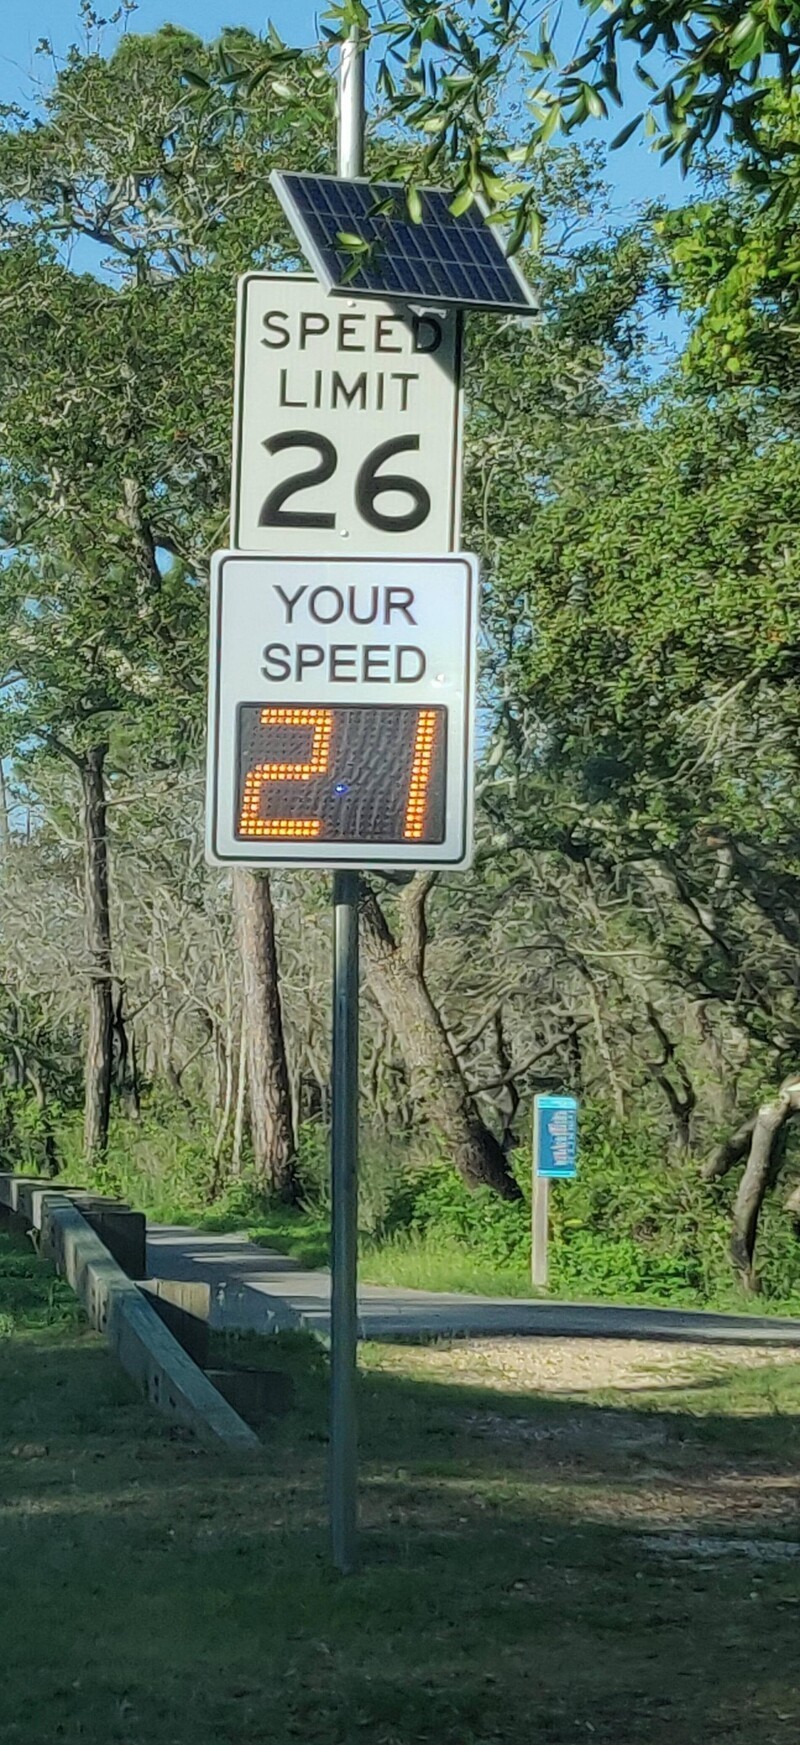 2. Некоторые дороги имеют уникальные ограничения скорости, например 26 миль/ч (около 42 км/ч)